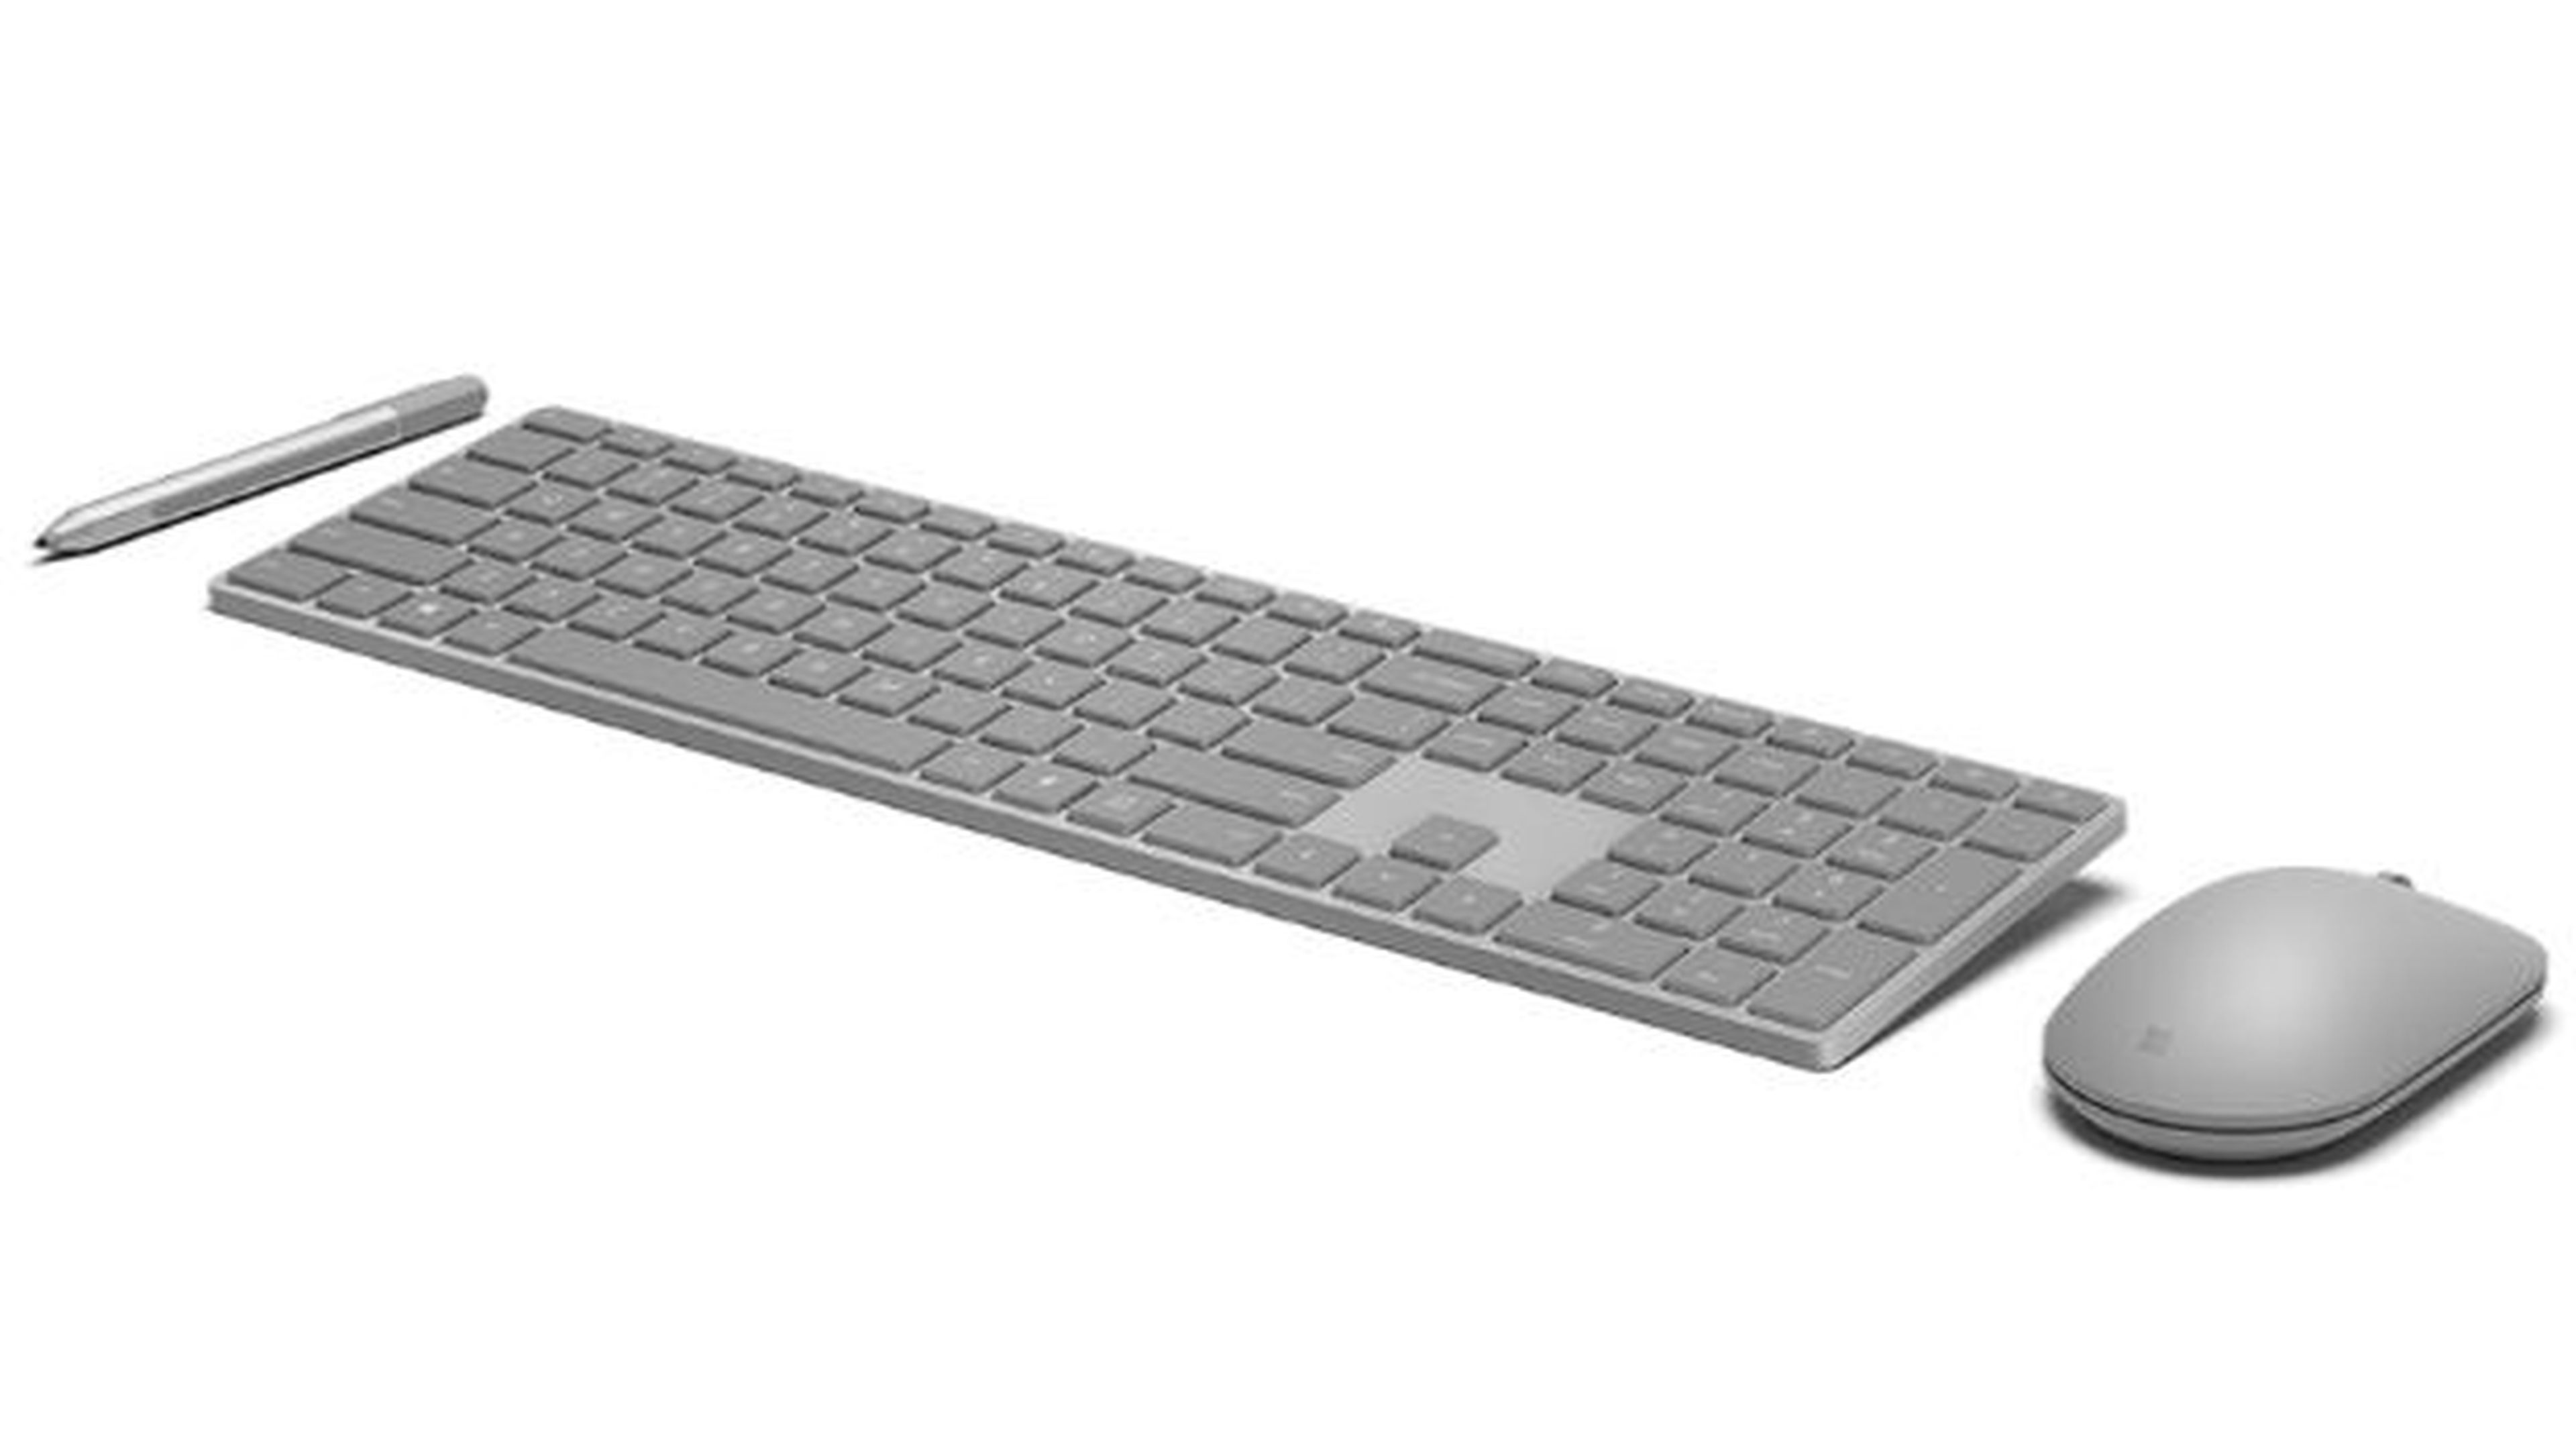 Nuevo teclado inalámbrico de Microsoft.